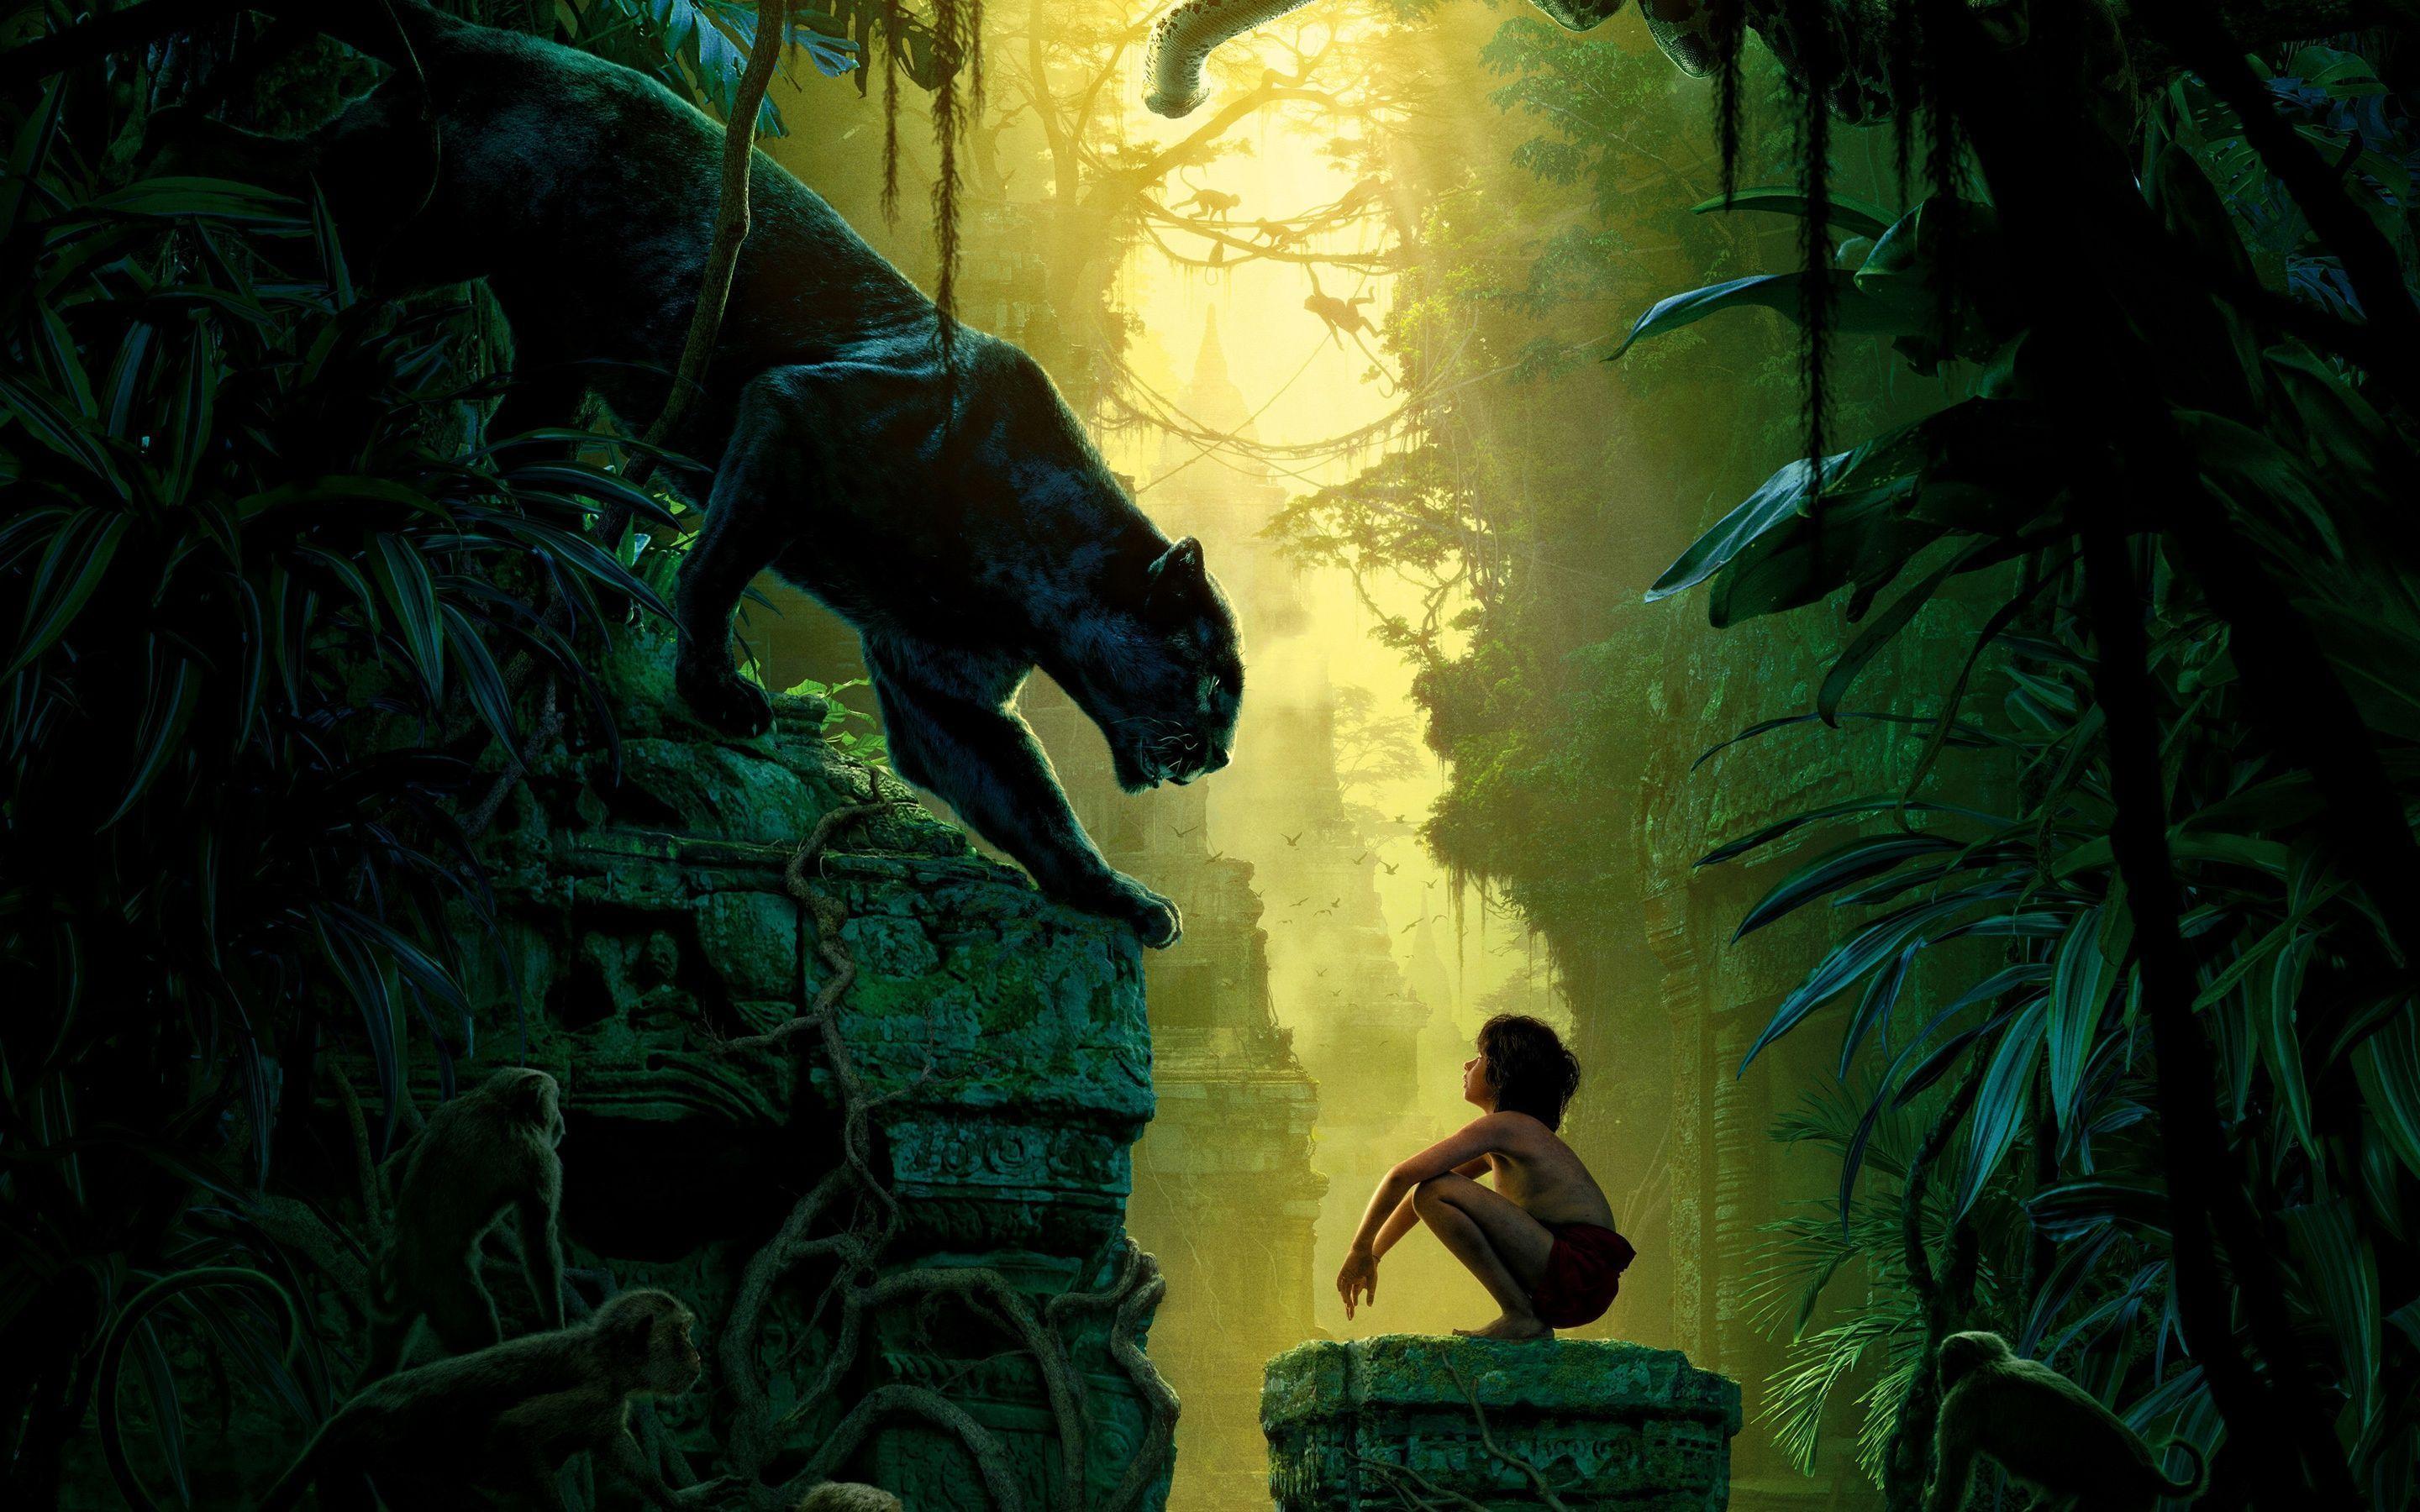 The Jungle Book 2016 Movie Wallpaper